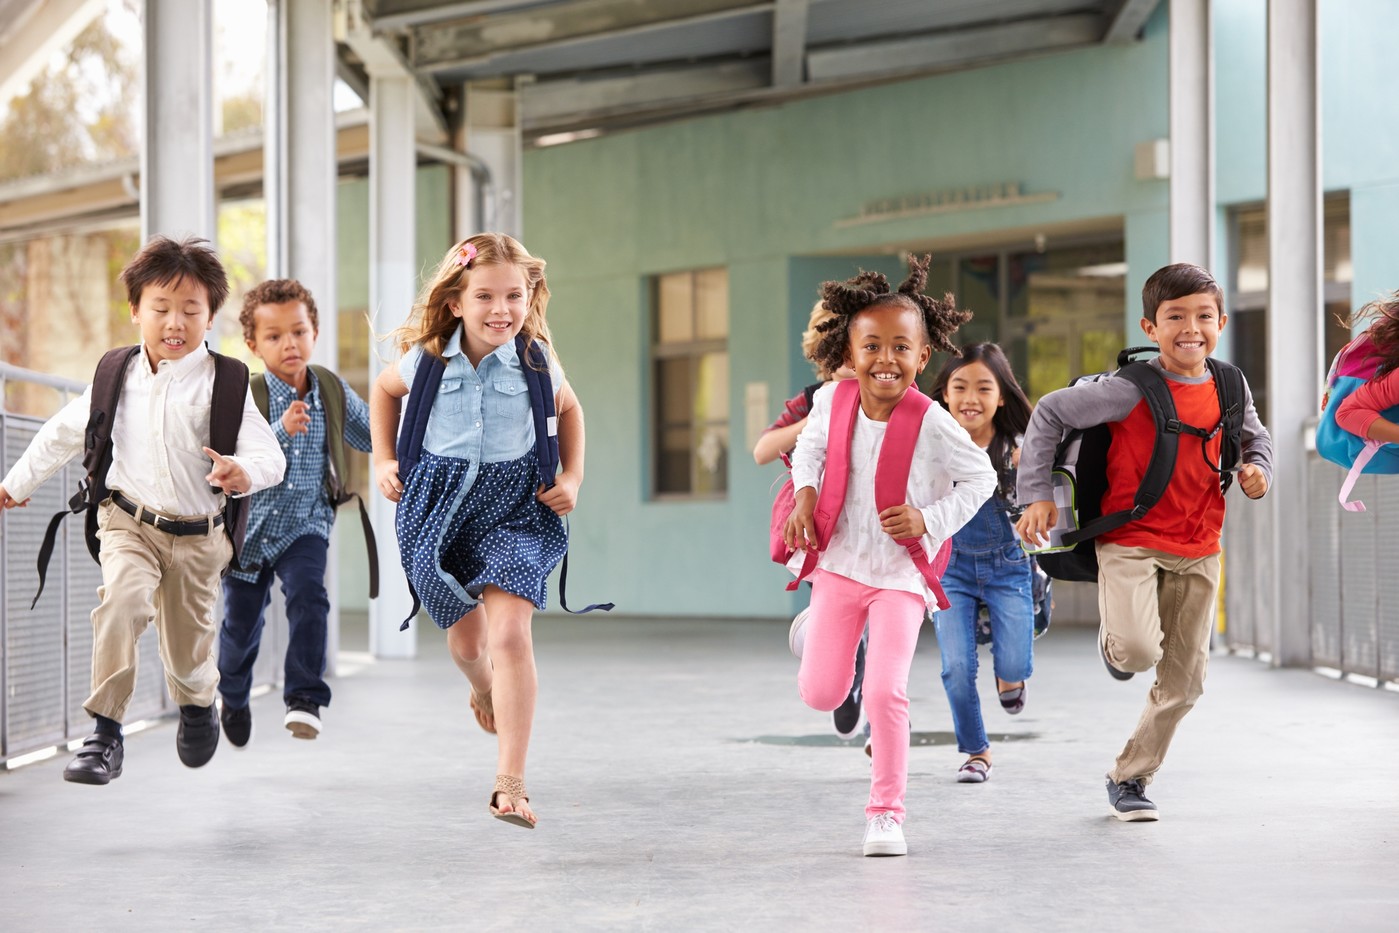 Comment assurer la sécurité de vos enfants à la sortie des écoles?